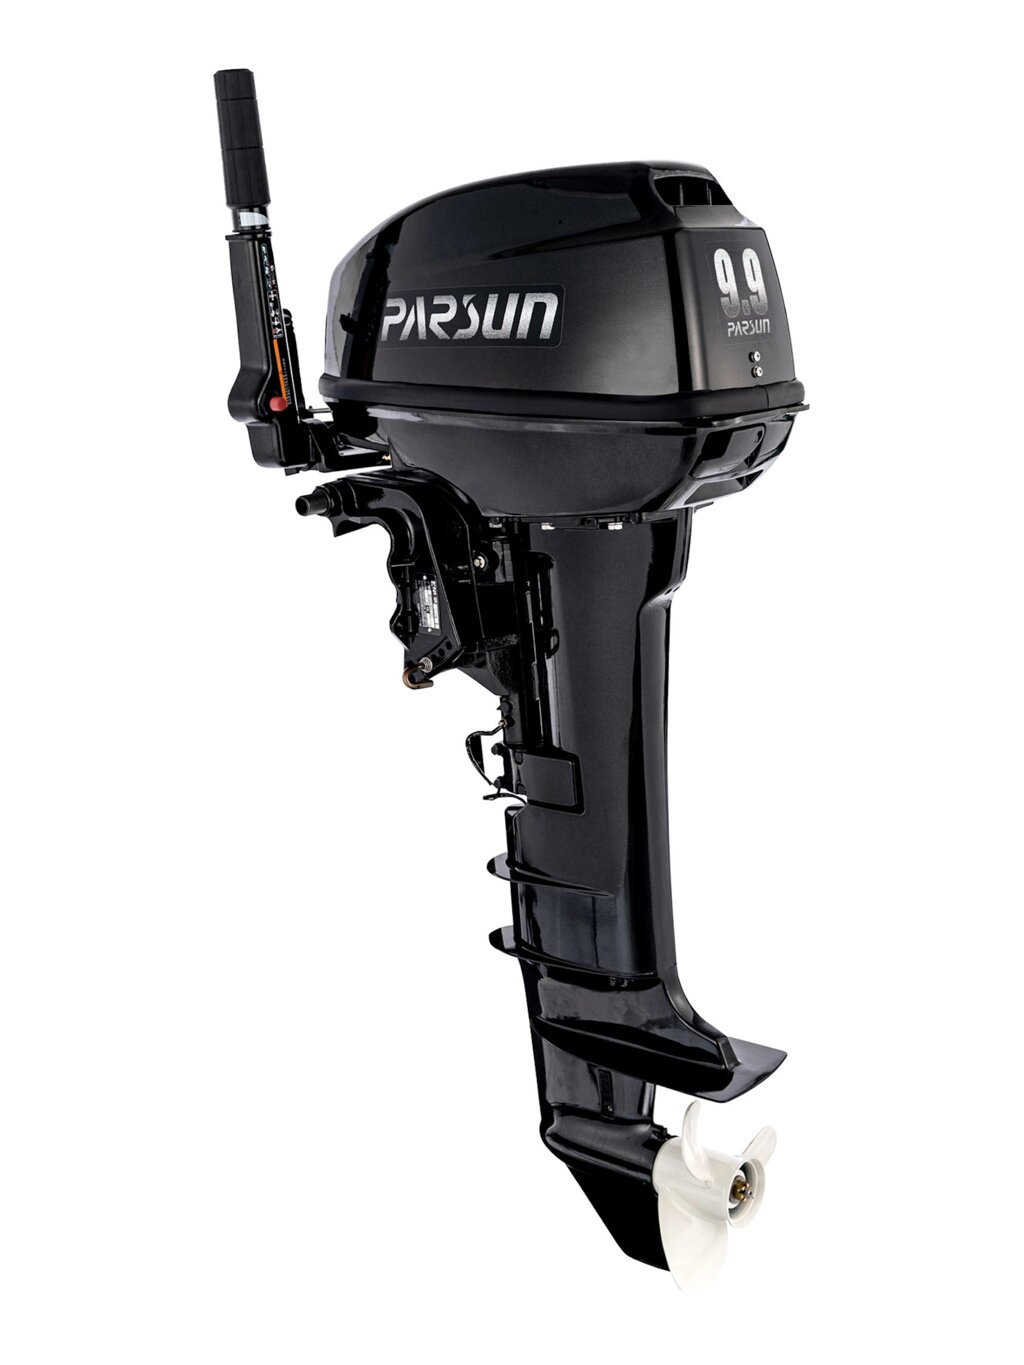 Лодочный мотор Parsun T9.9BMS от компании "Посейдон" товары для рыбалки и активного отдыха - фото 1